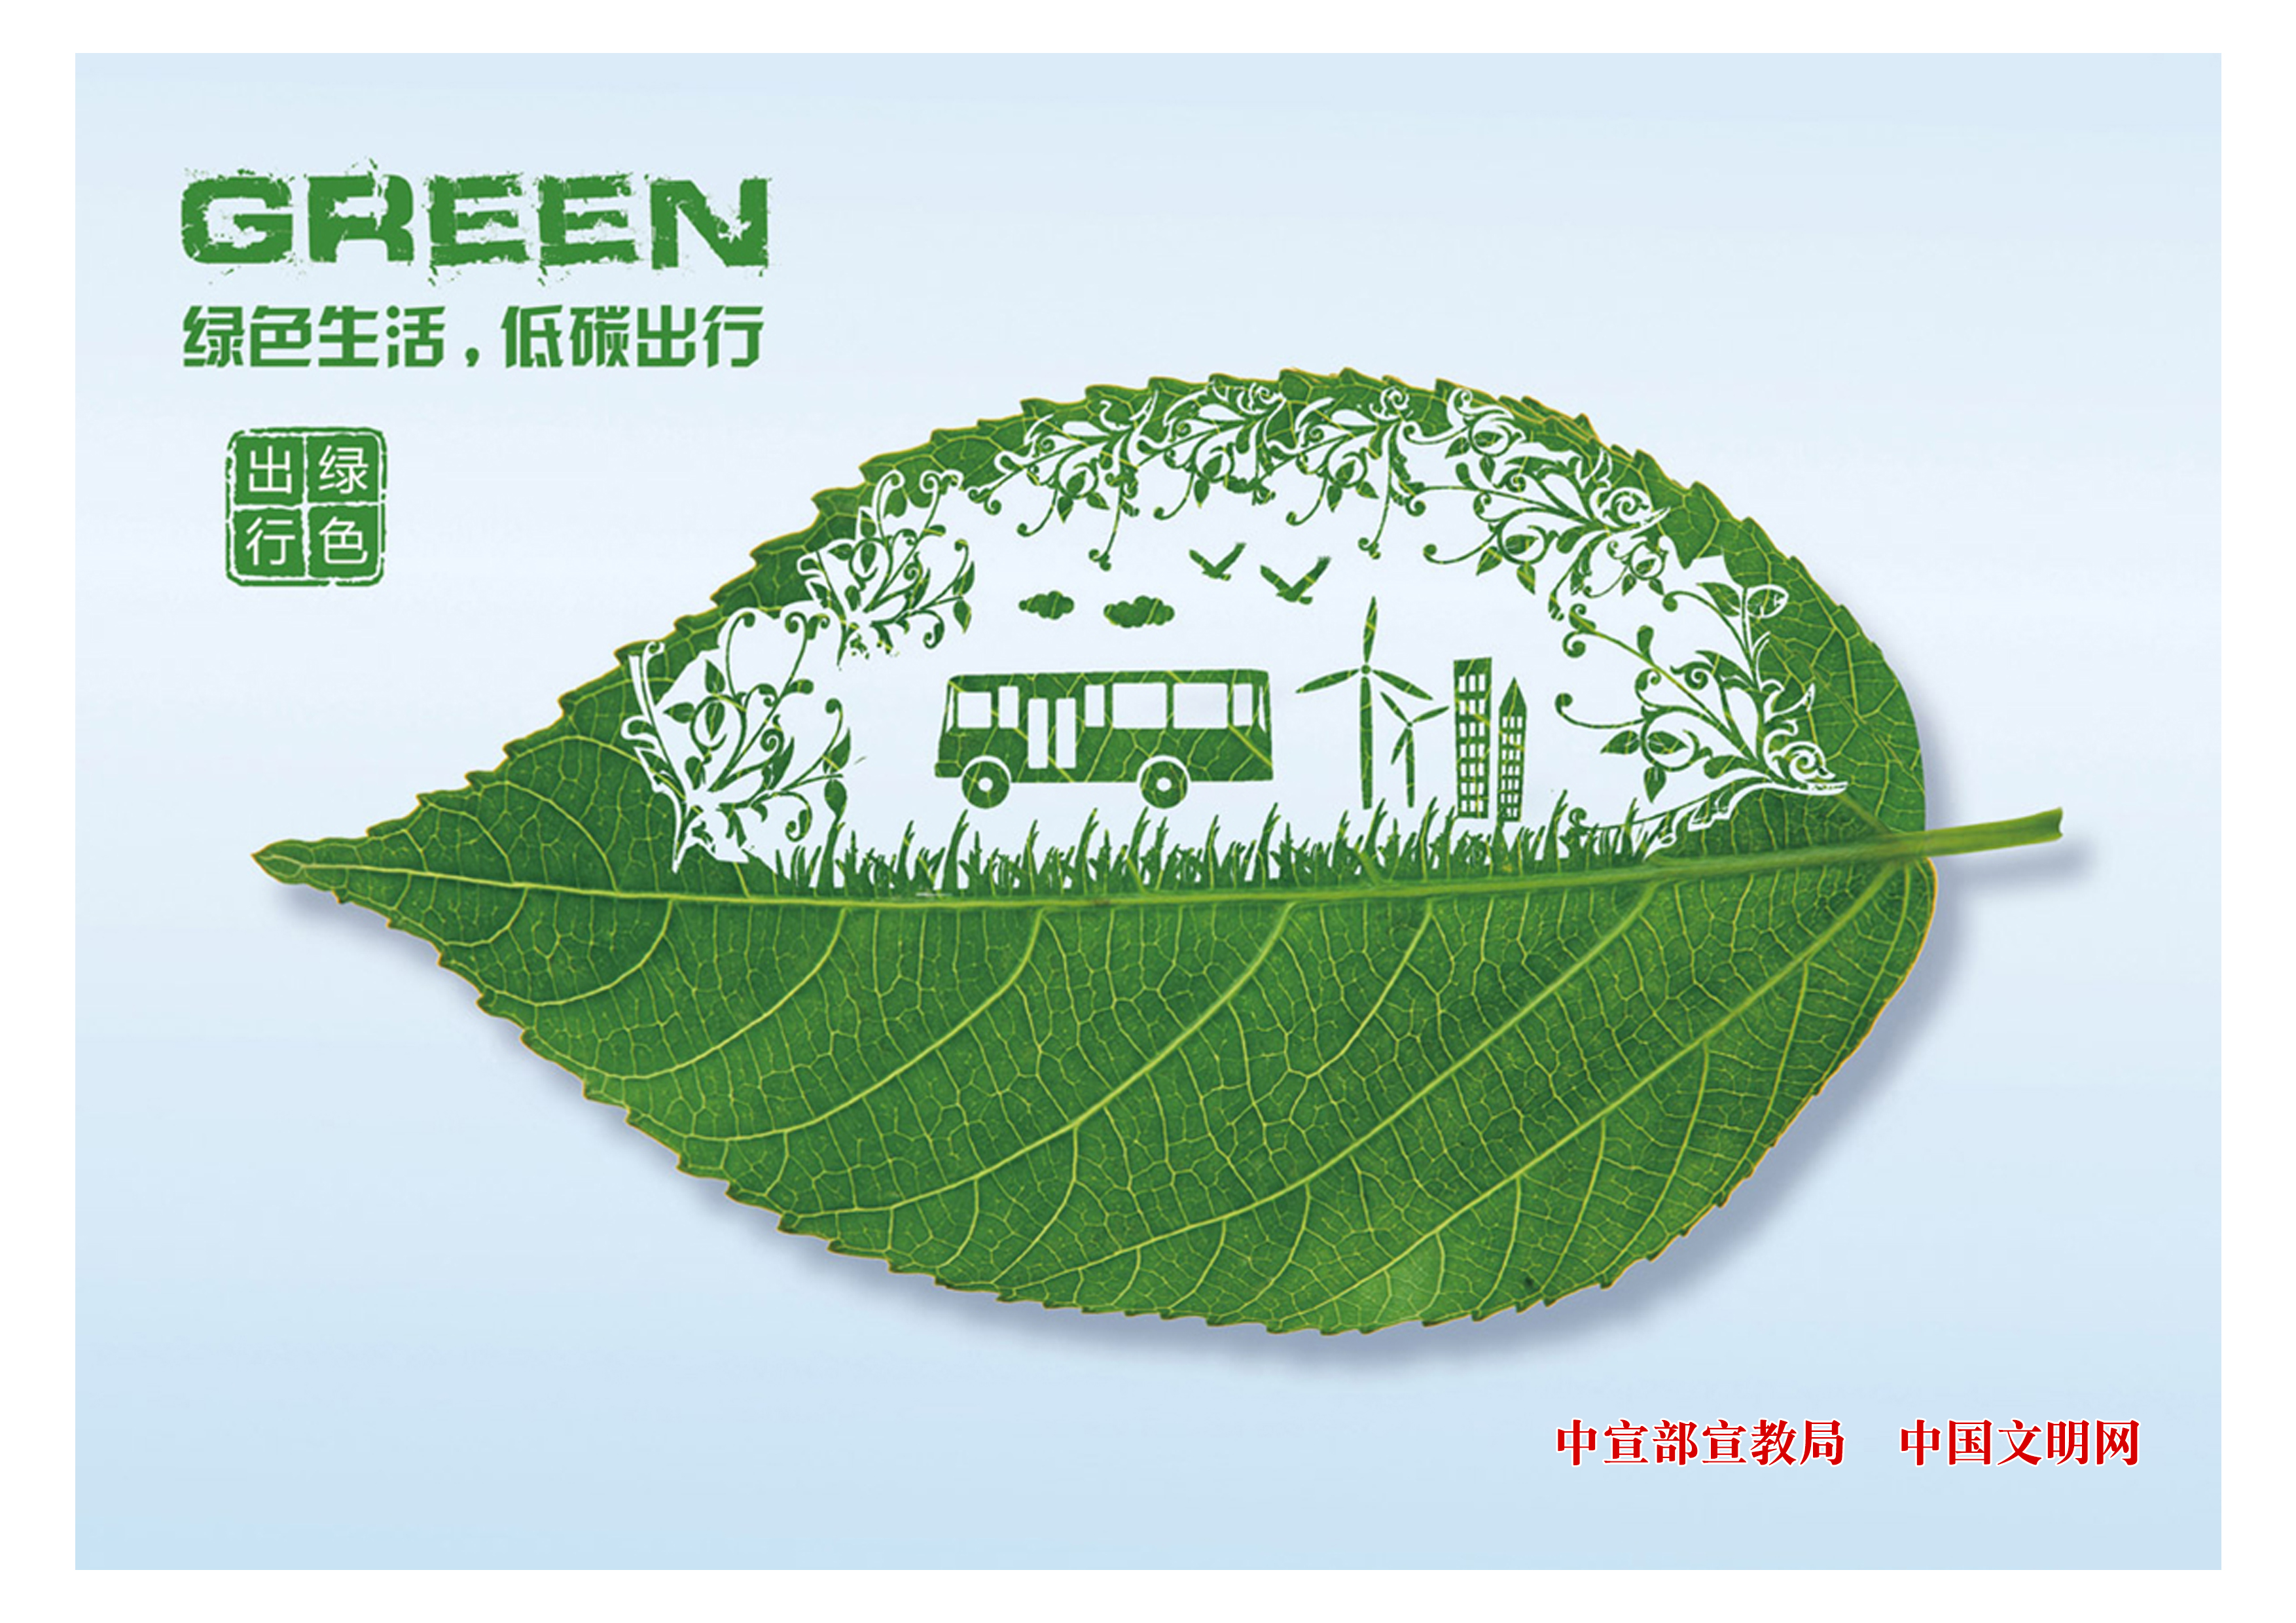 【文明风尚】 绿色生活 低碳出行